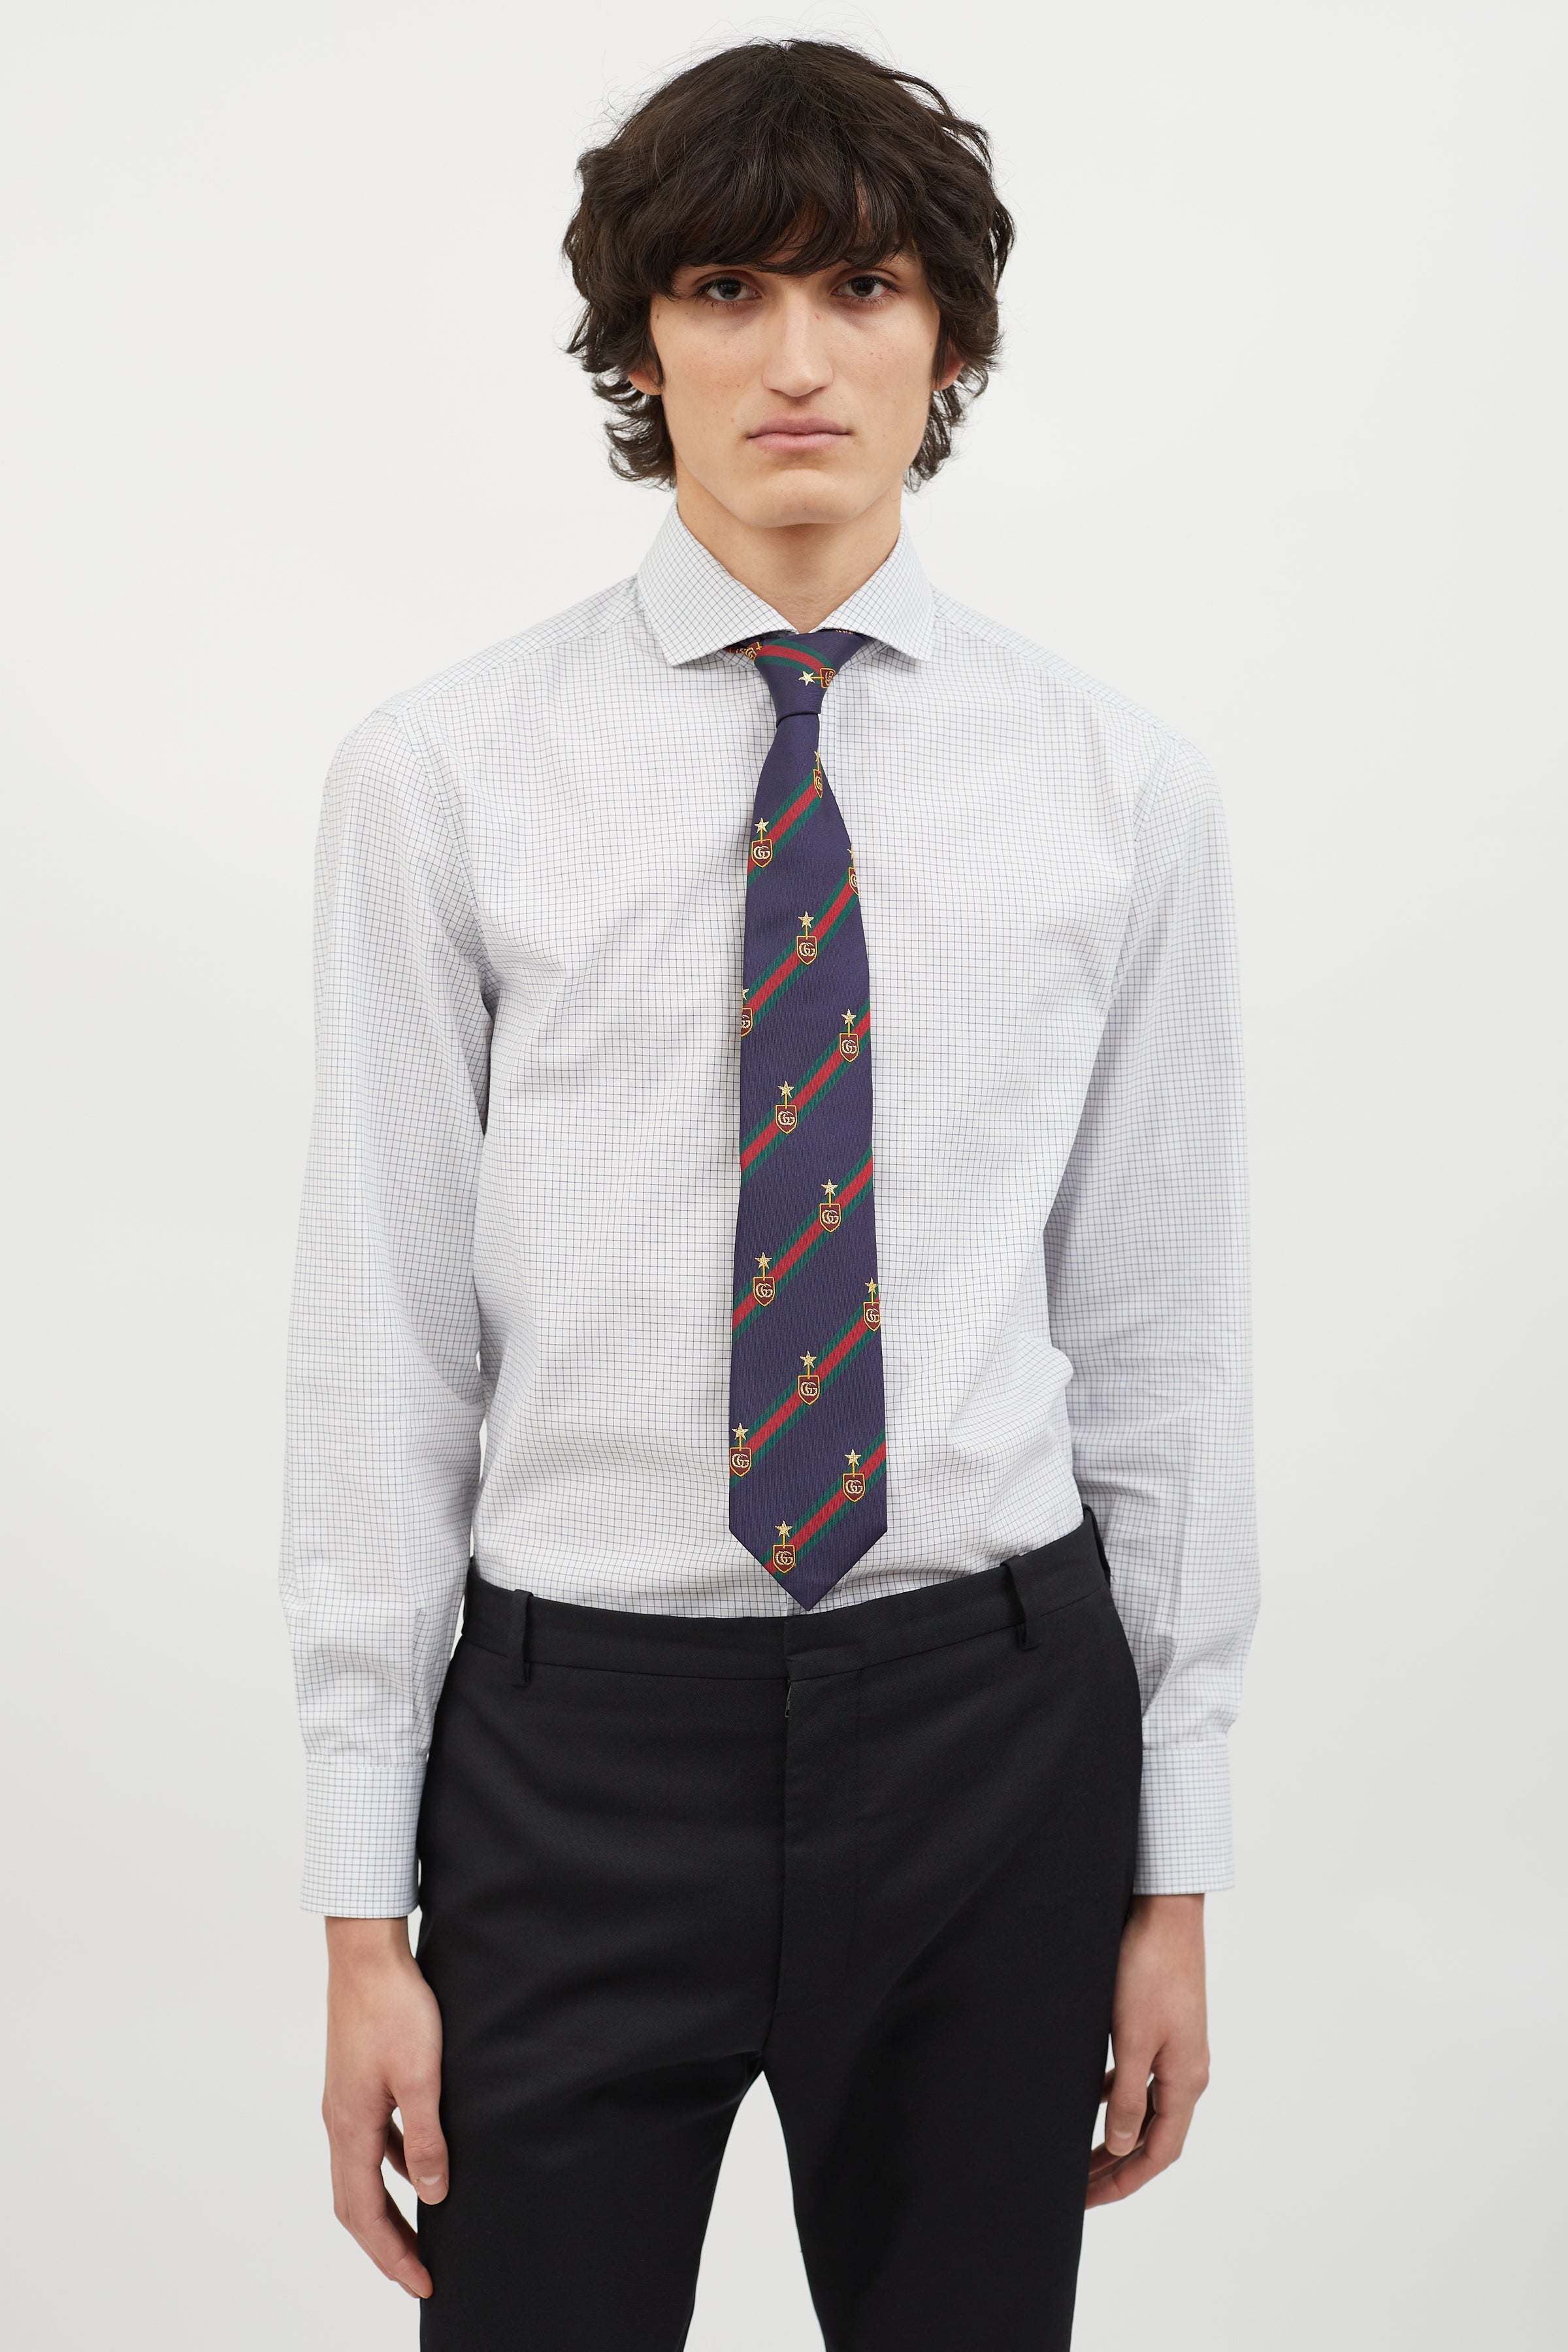 Gucci Bee motif tie, Men's Accessories